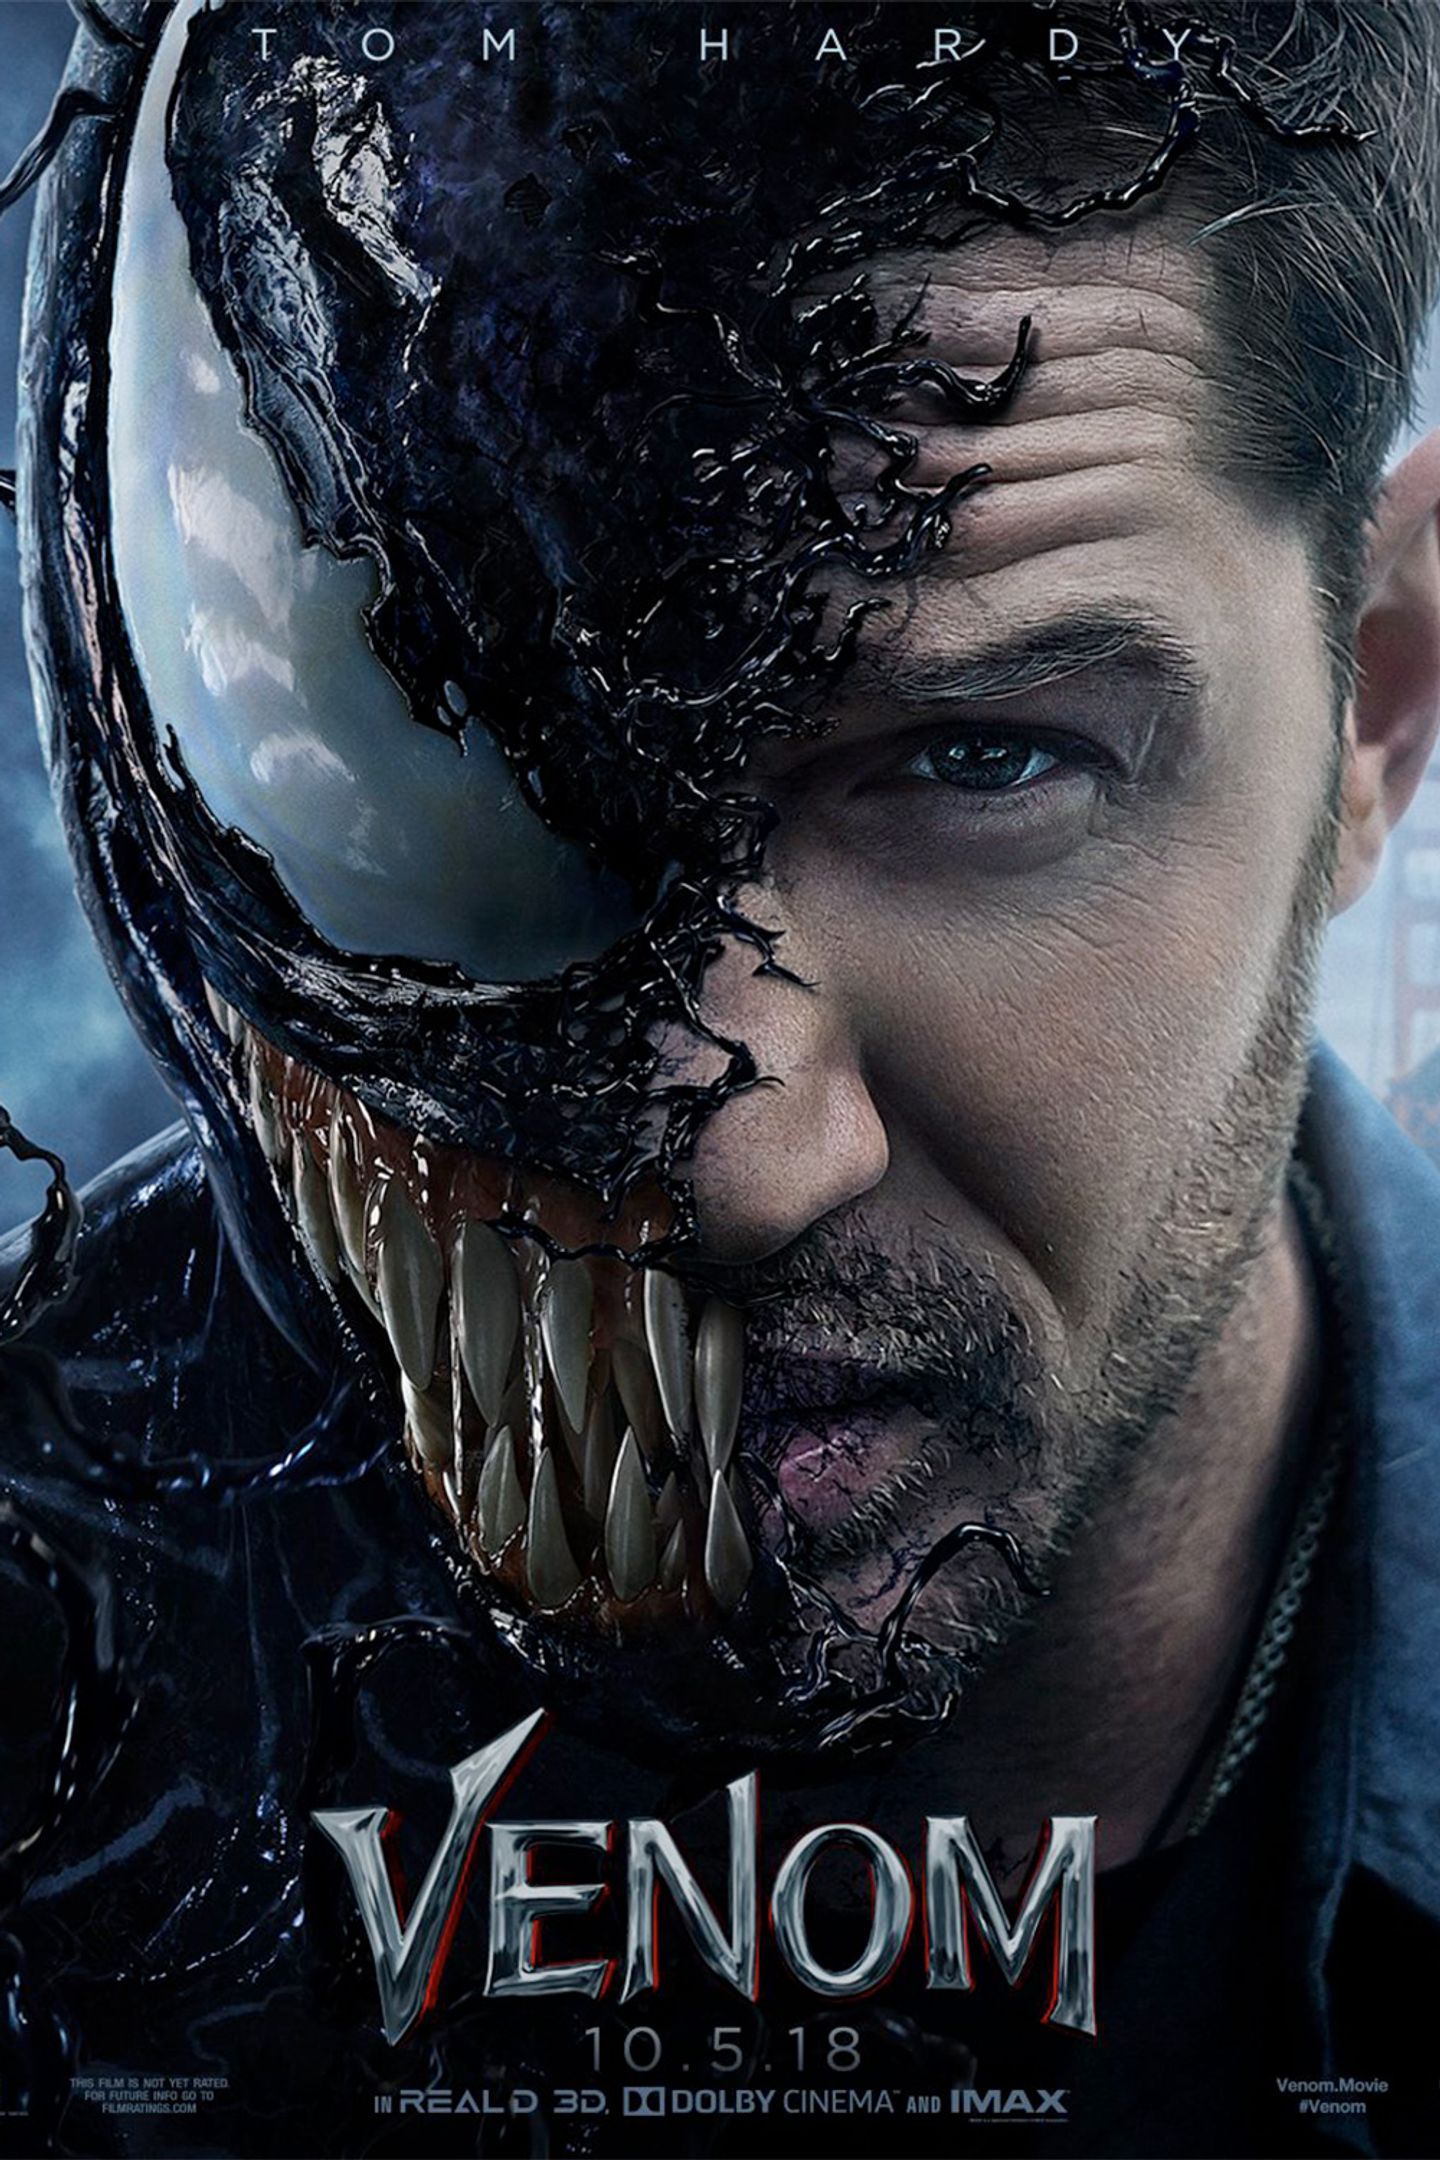 Plakat for 'Venom'